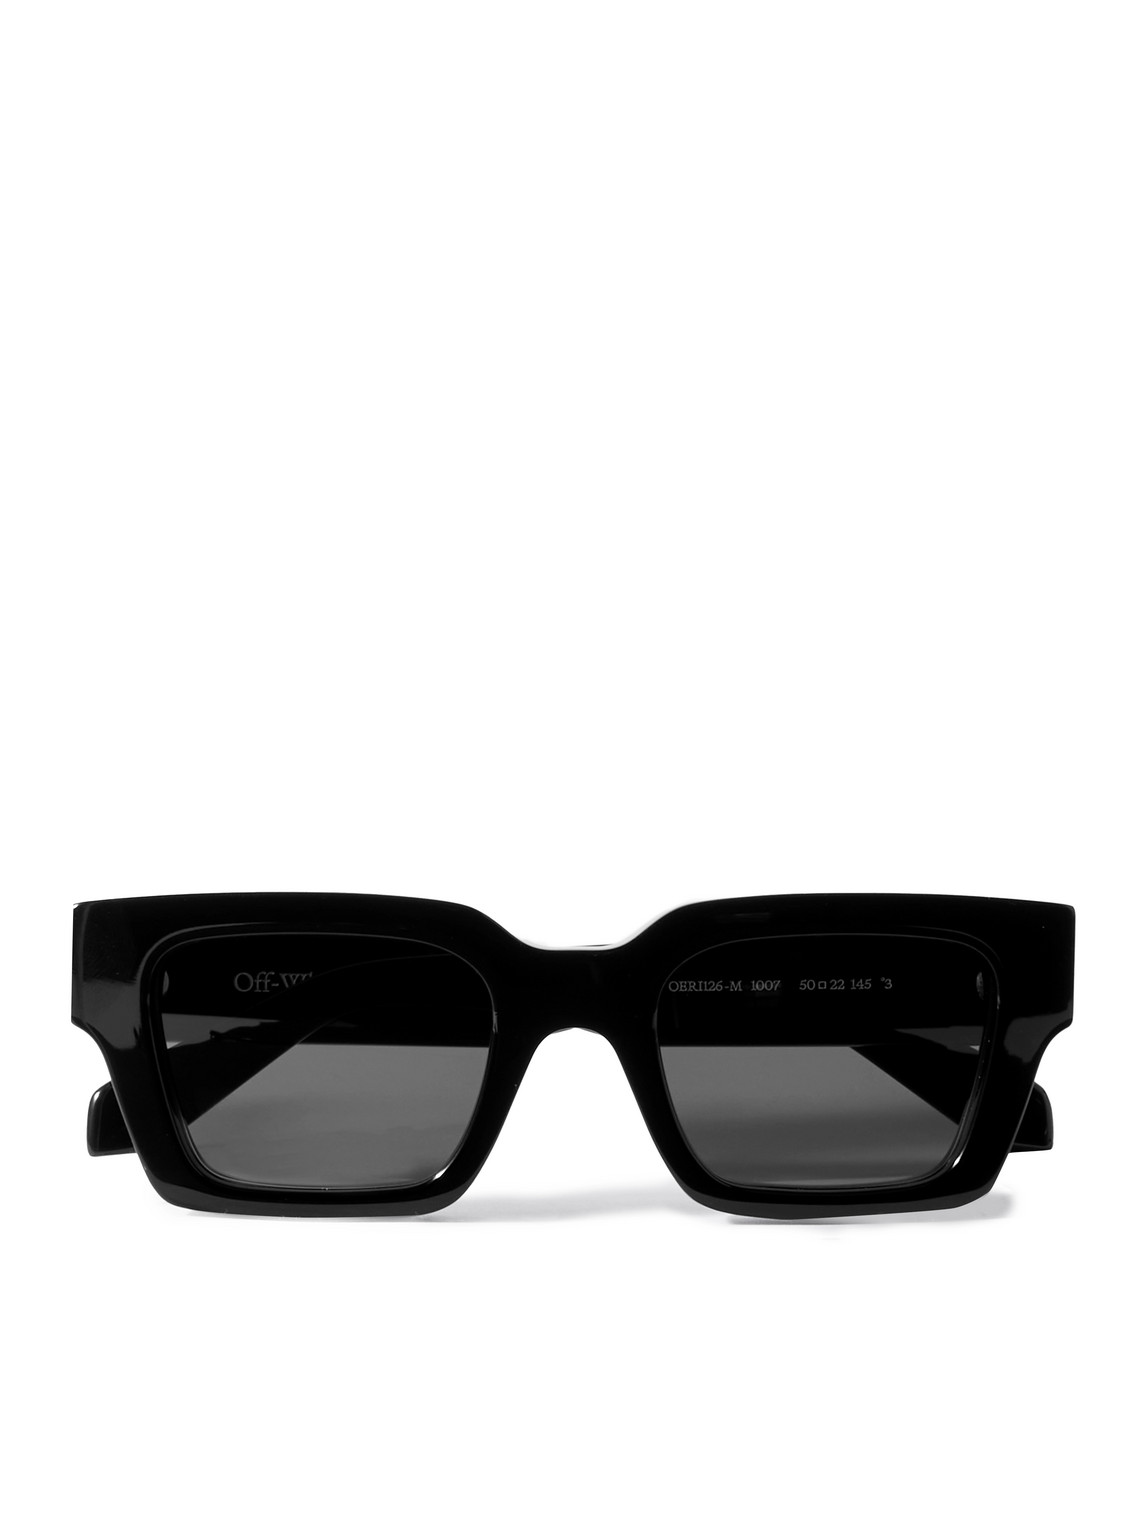 Off-white Virgil D-frame Acetate Sunglasses In Black